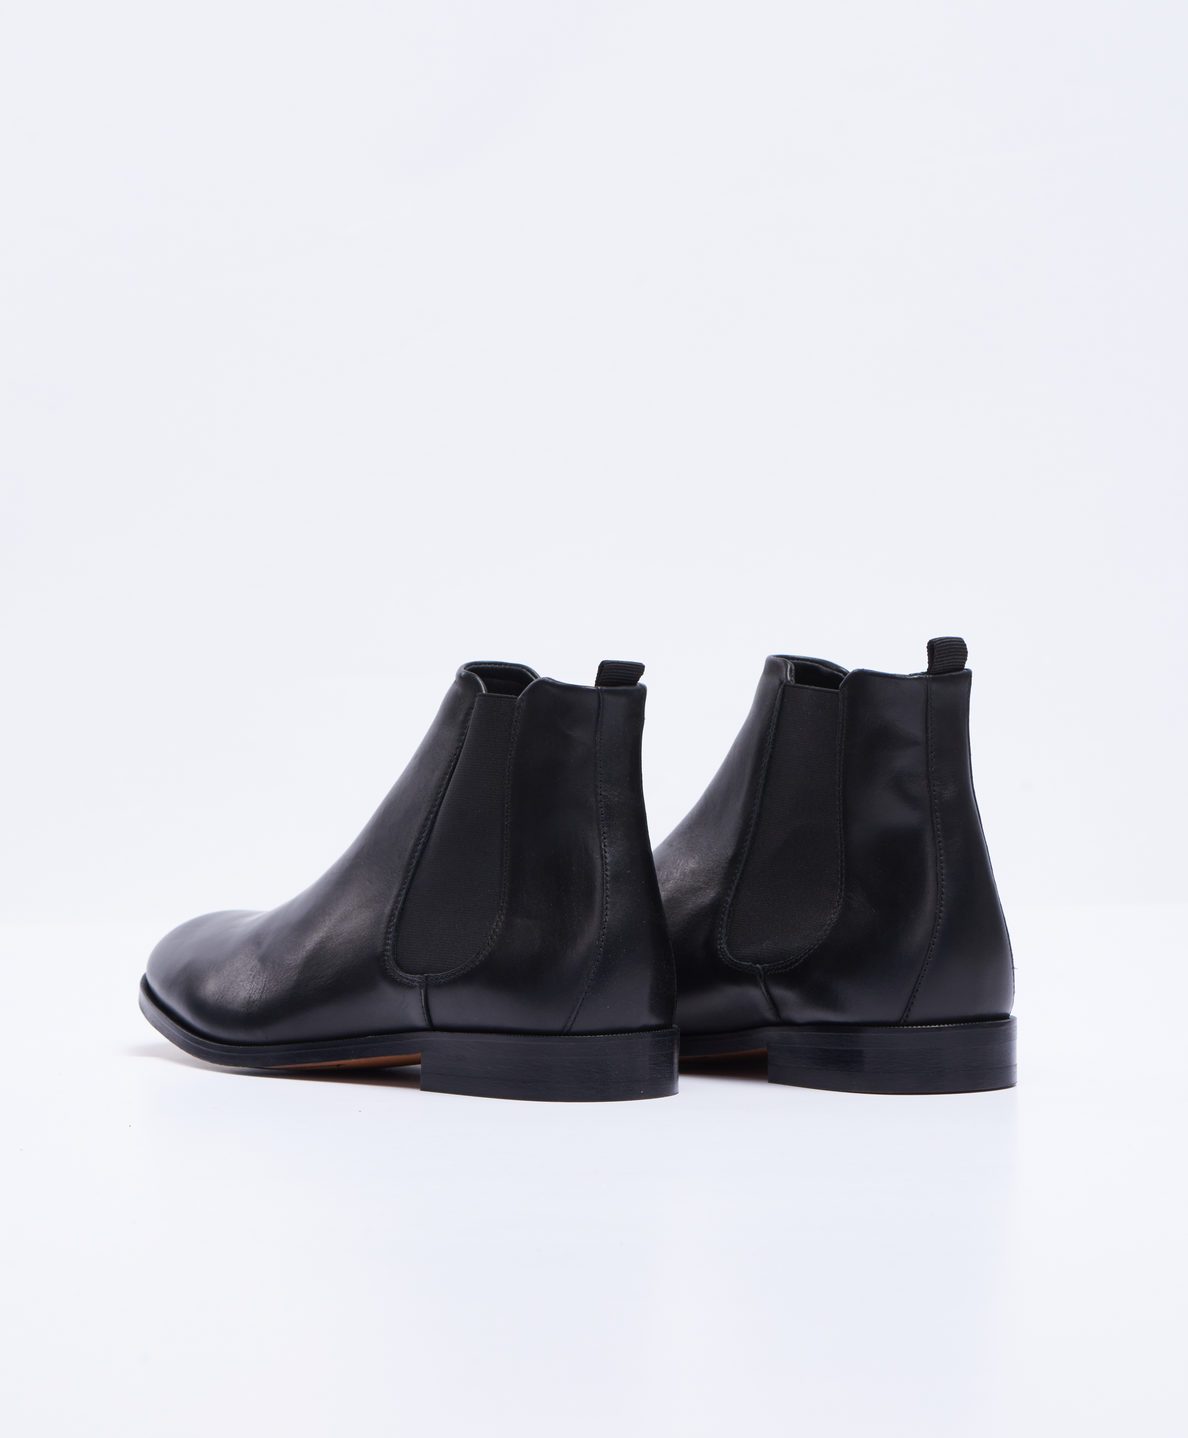 Royal RepubliQ Shoes Men’s Chelsea Boot - Black